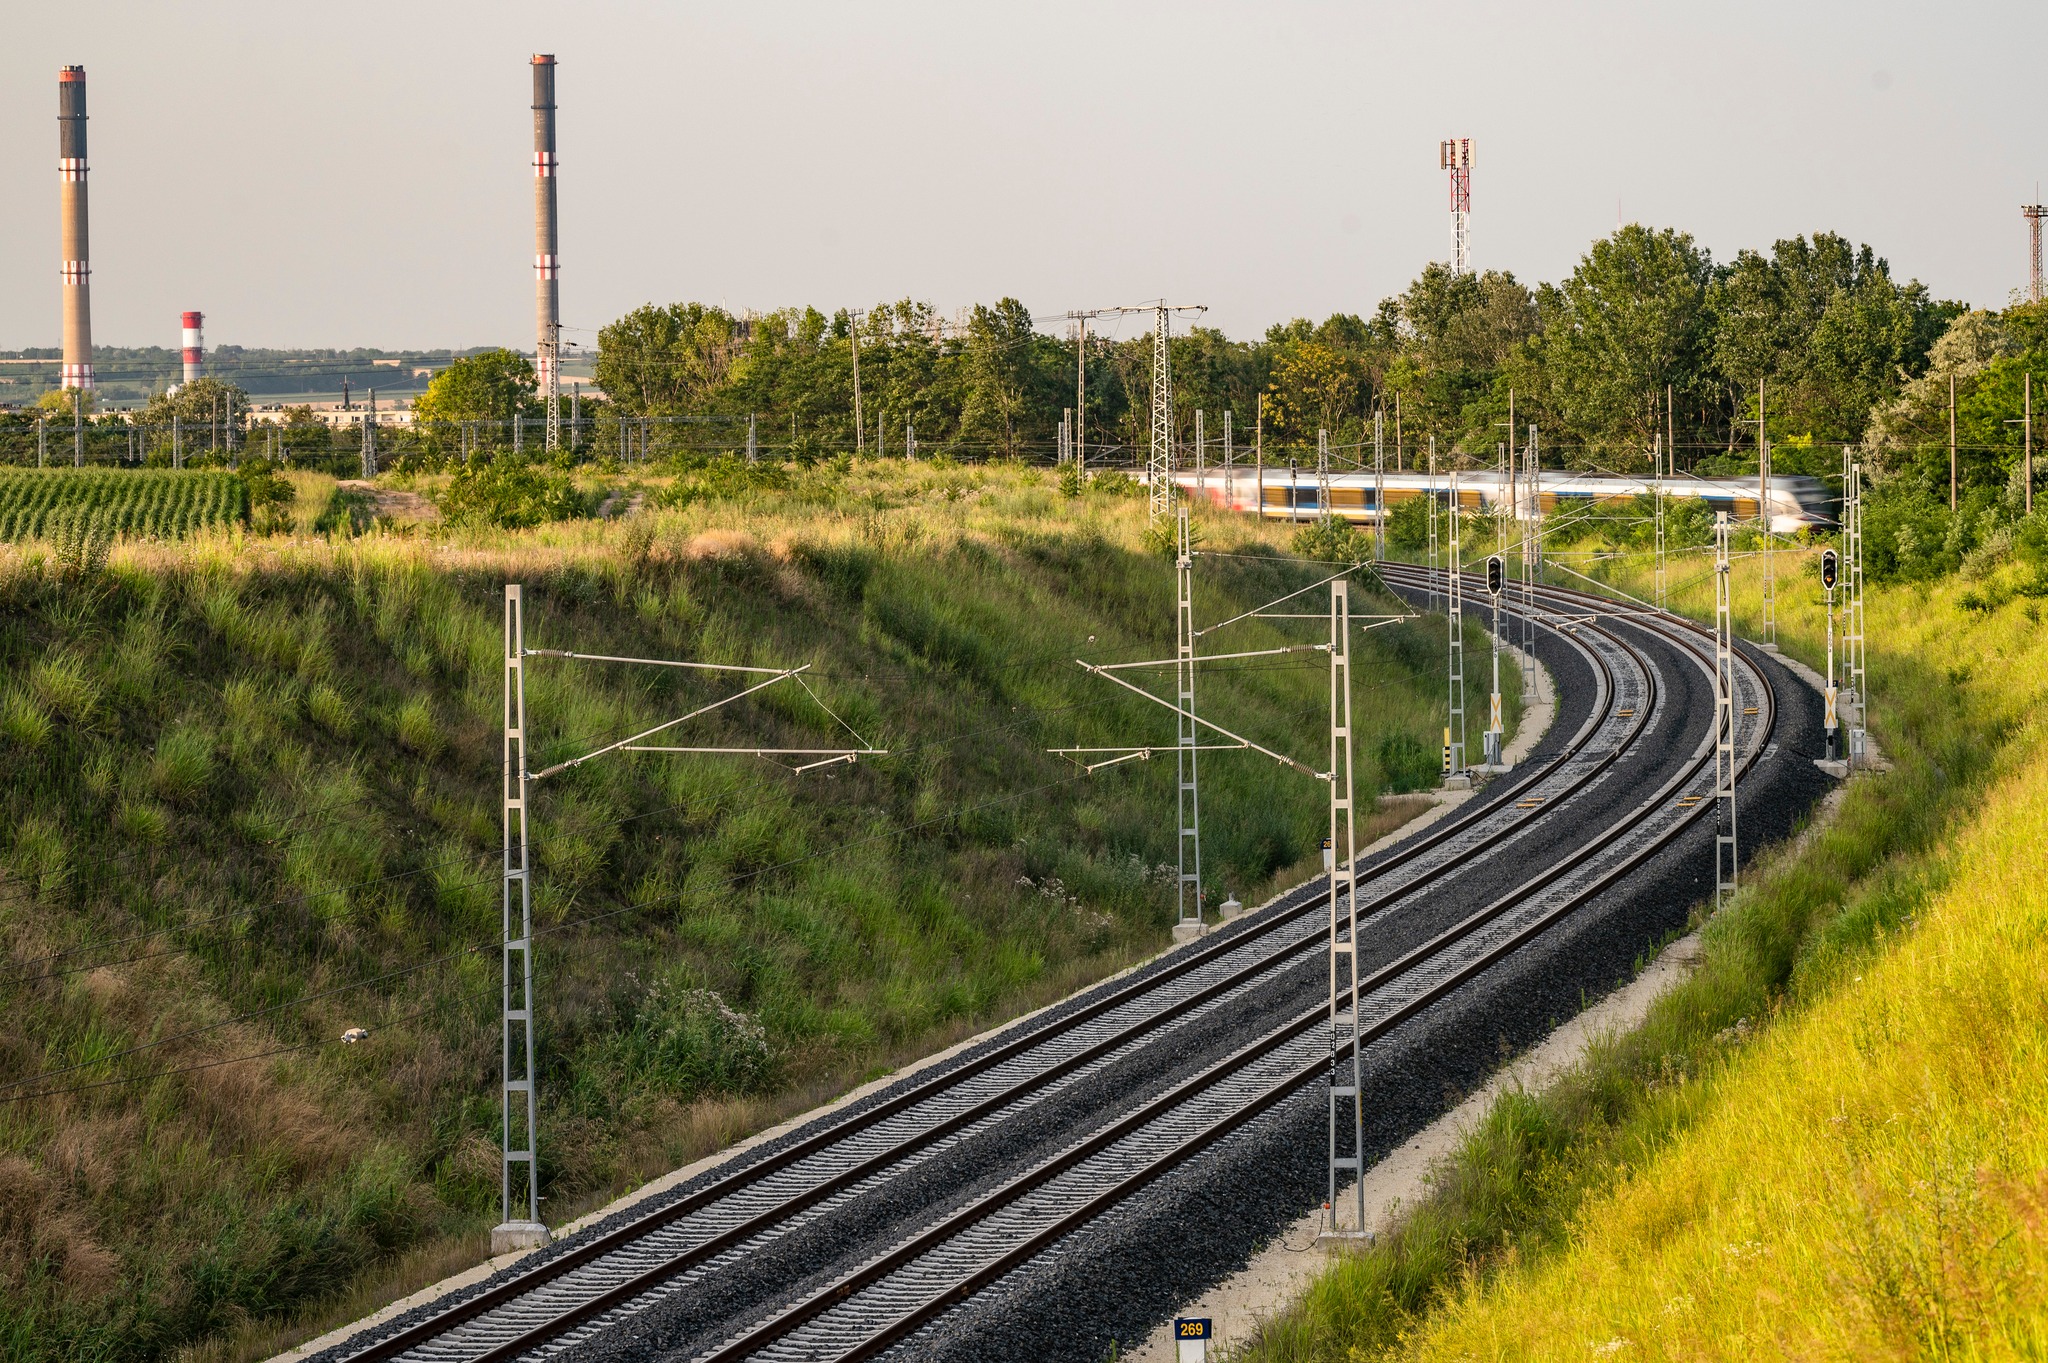 Villamos motorvonatok beszerzését tervezi a MÁV-START